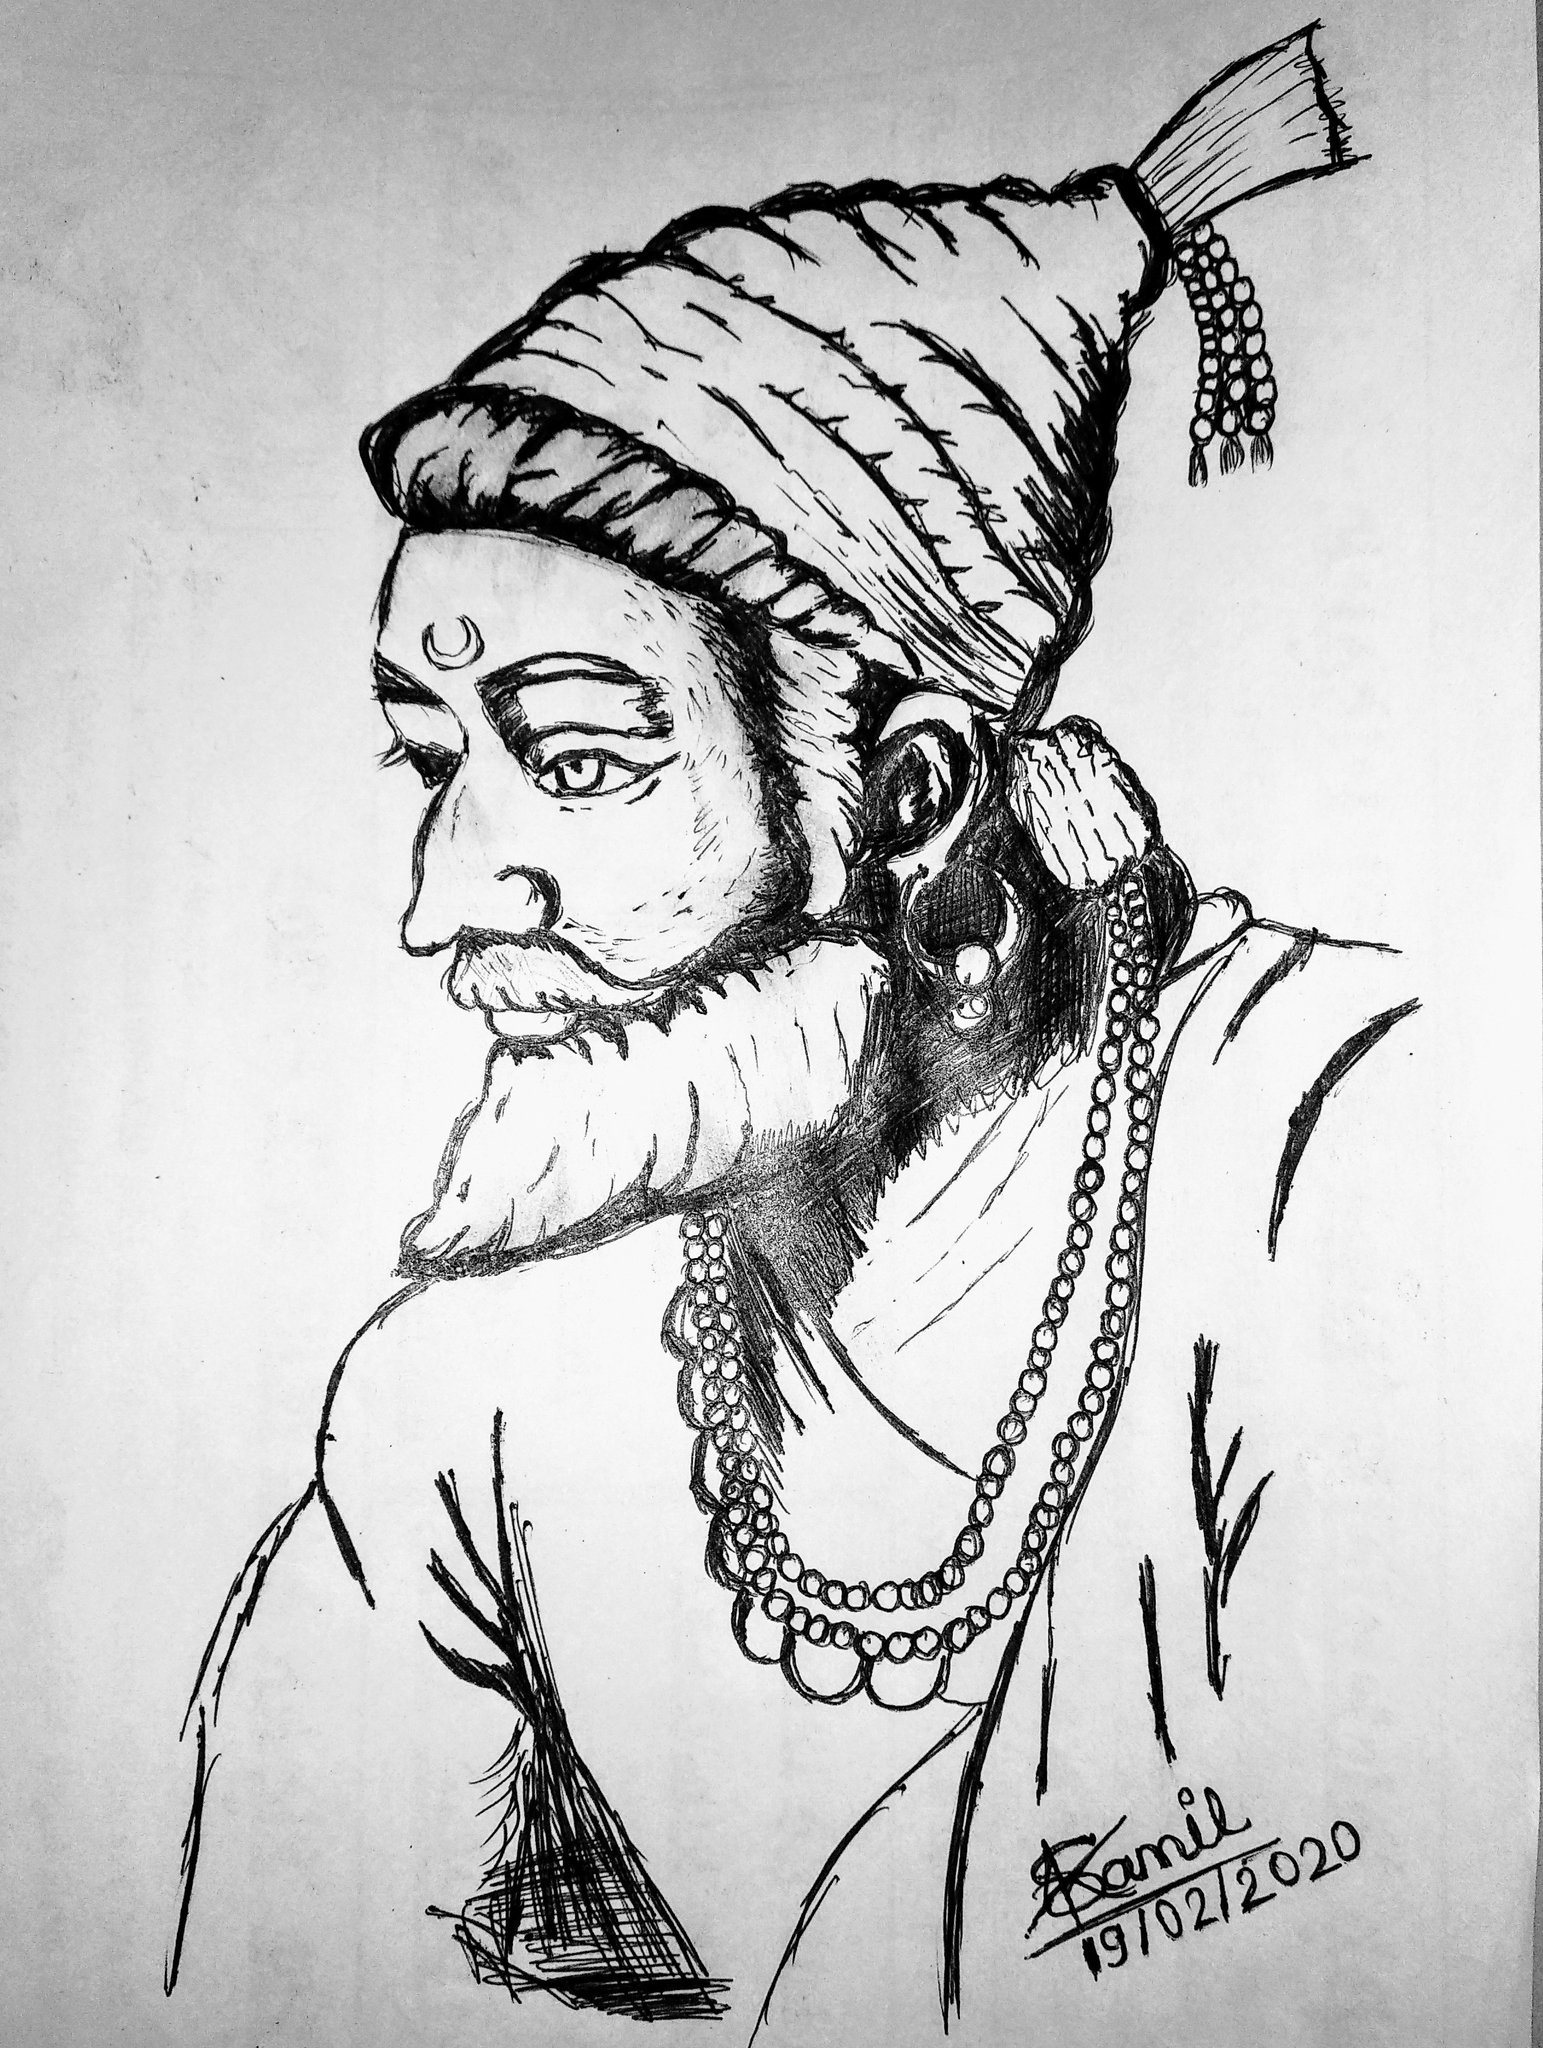 Chhatrapati Shivaji Maharaj drawing easy - How to draw chhatrapati shivaji  drawing and coloring easy - YouTube